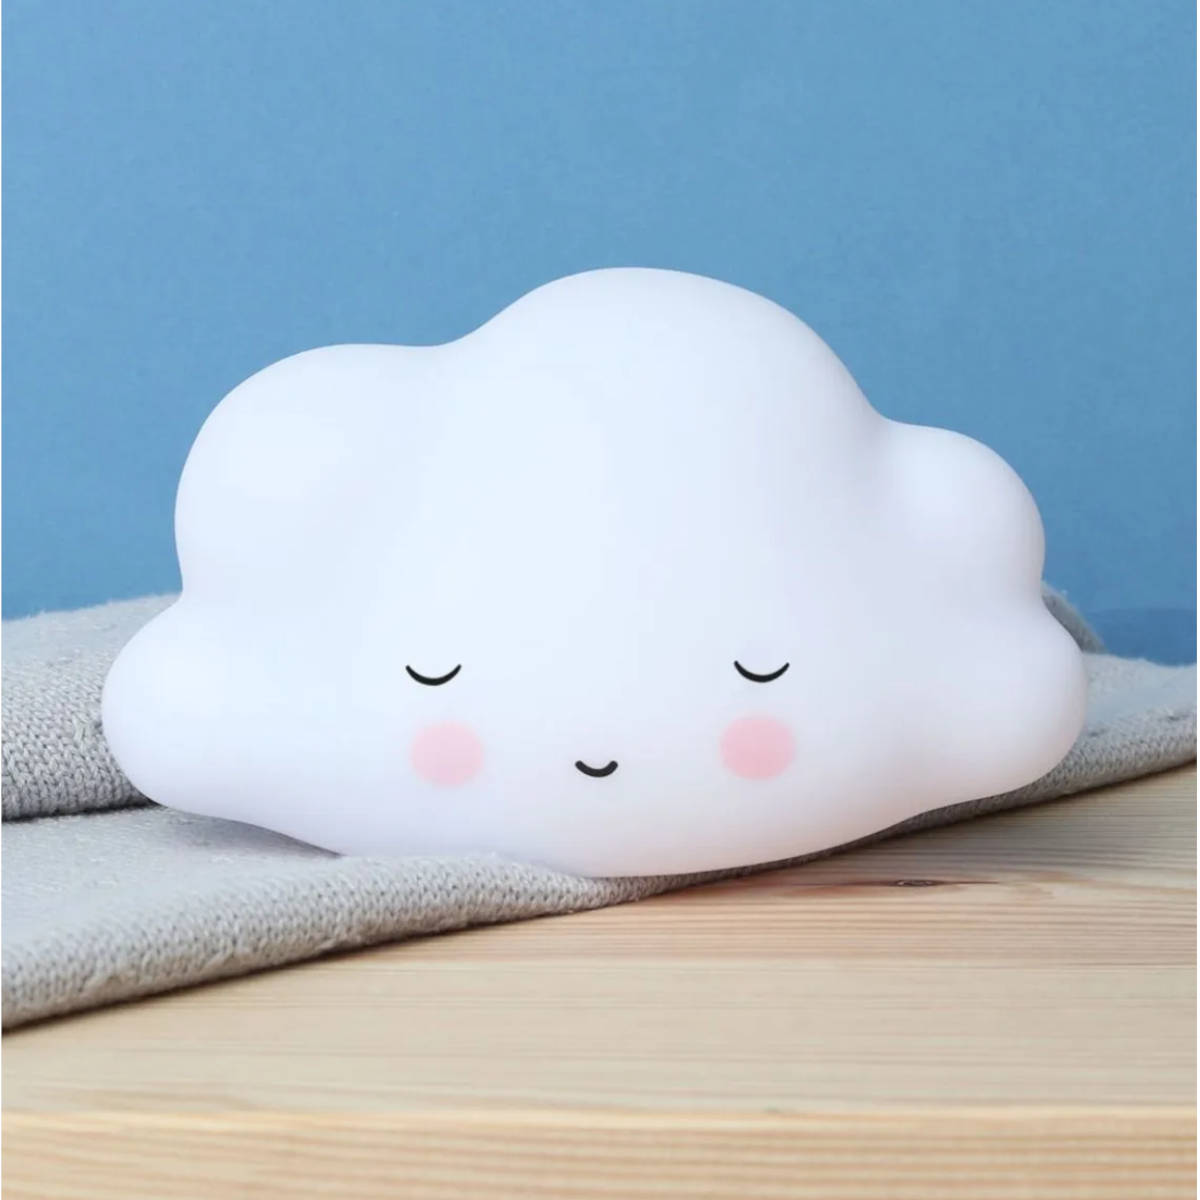 Fancy Nominering ensom Little Night Light, Sleeping Cloud – My Sweet Muffin